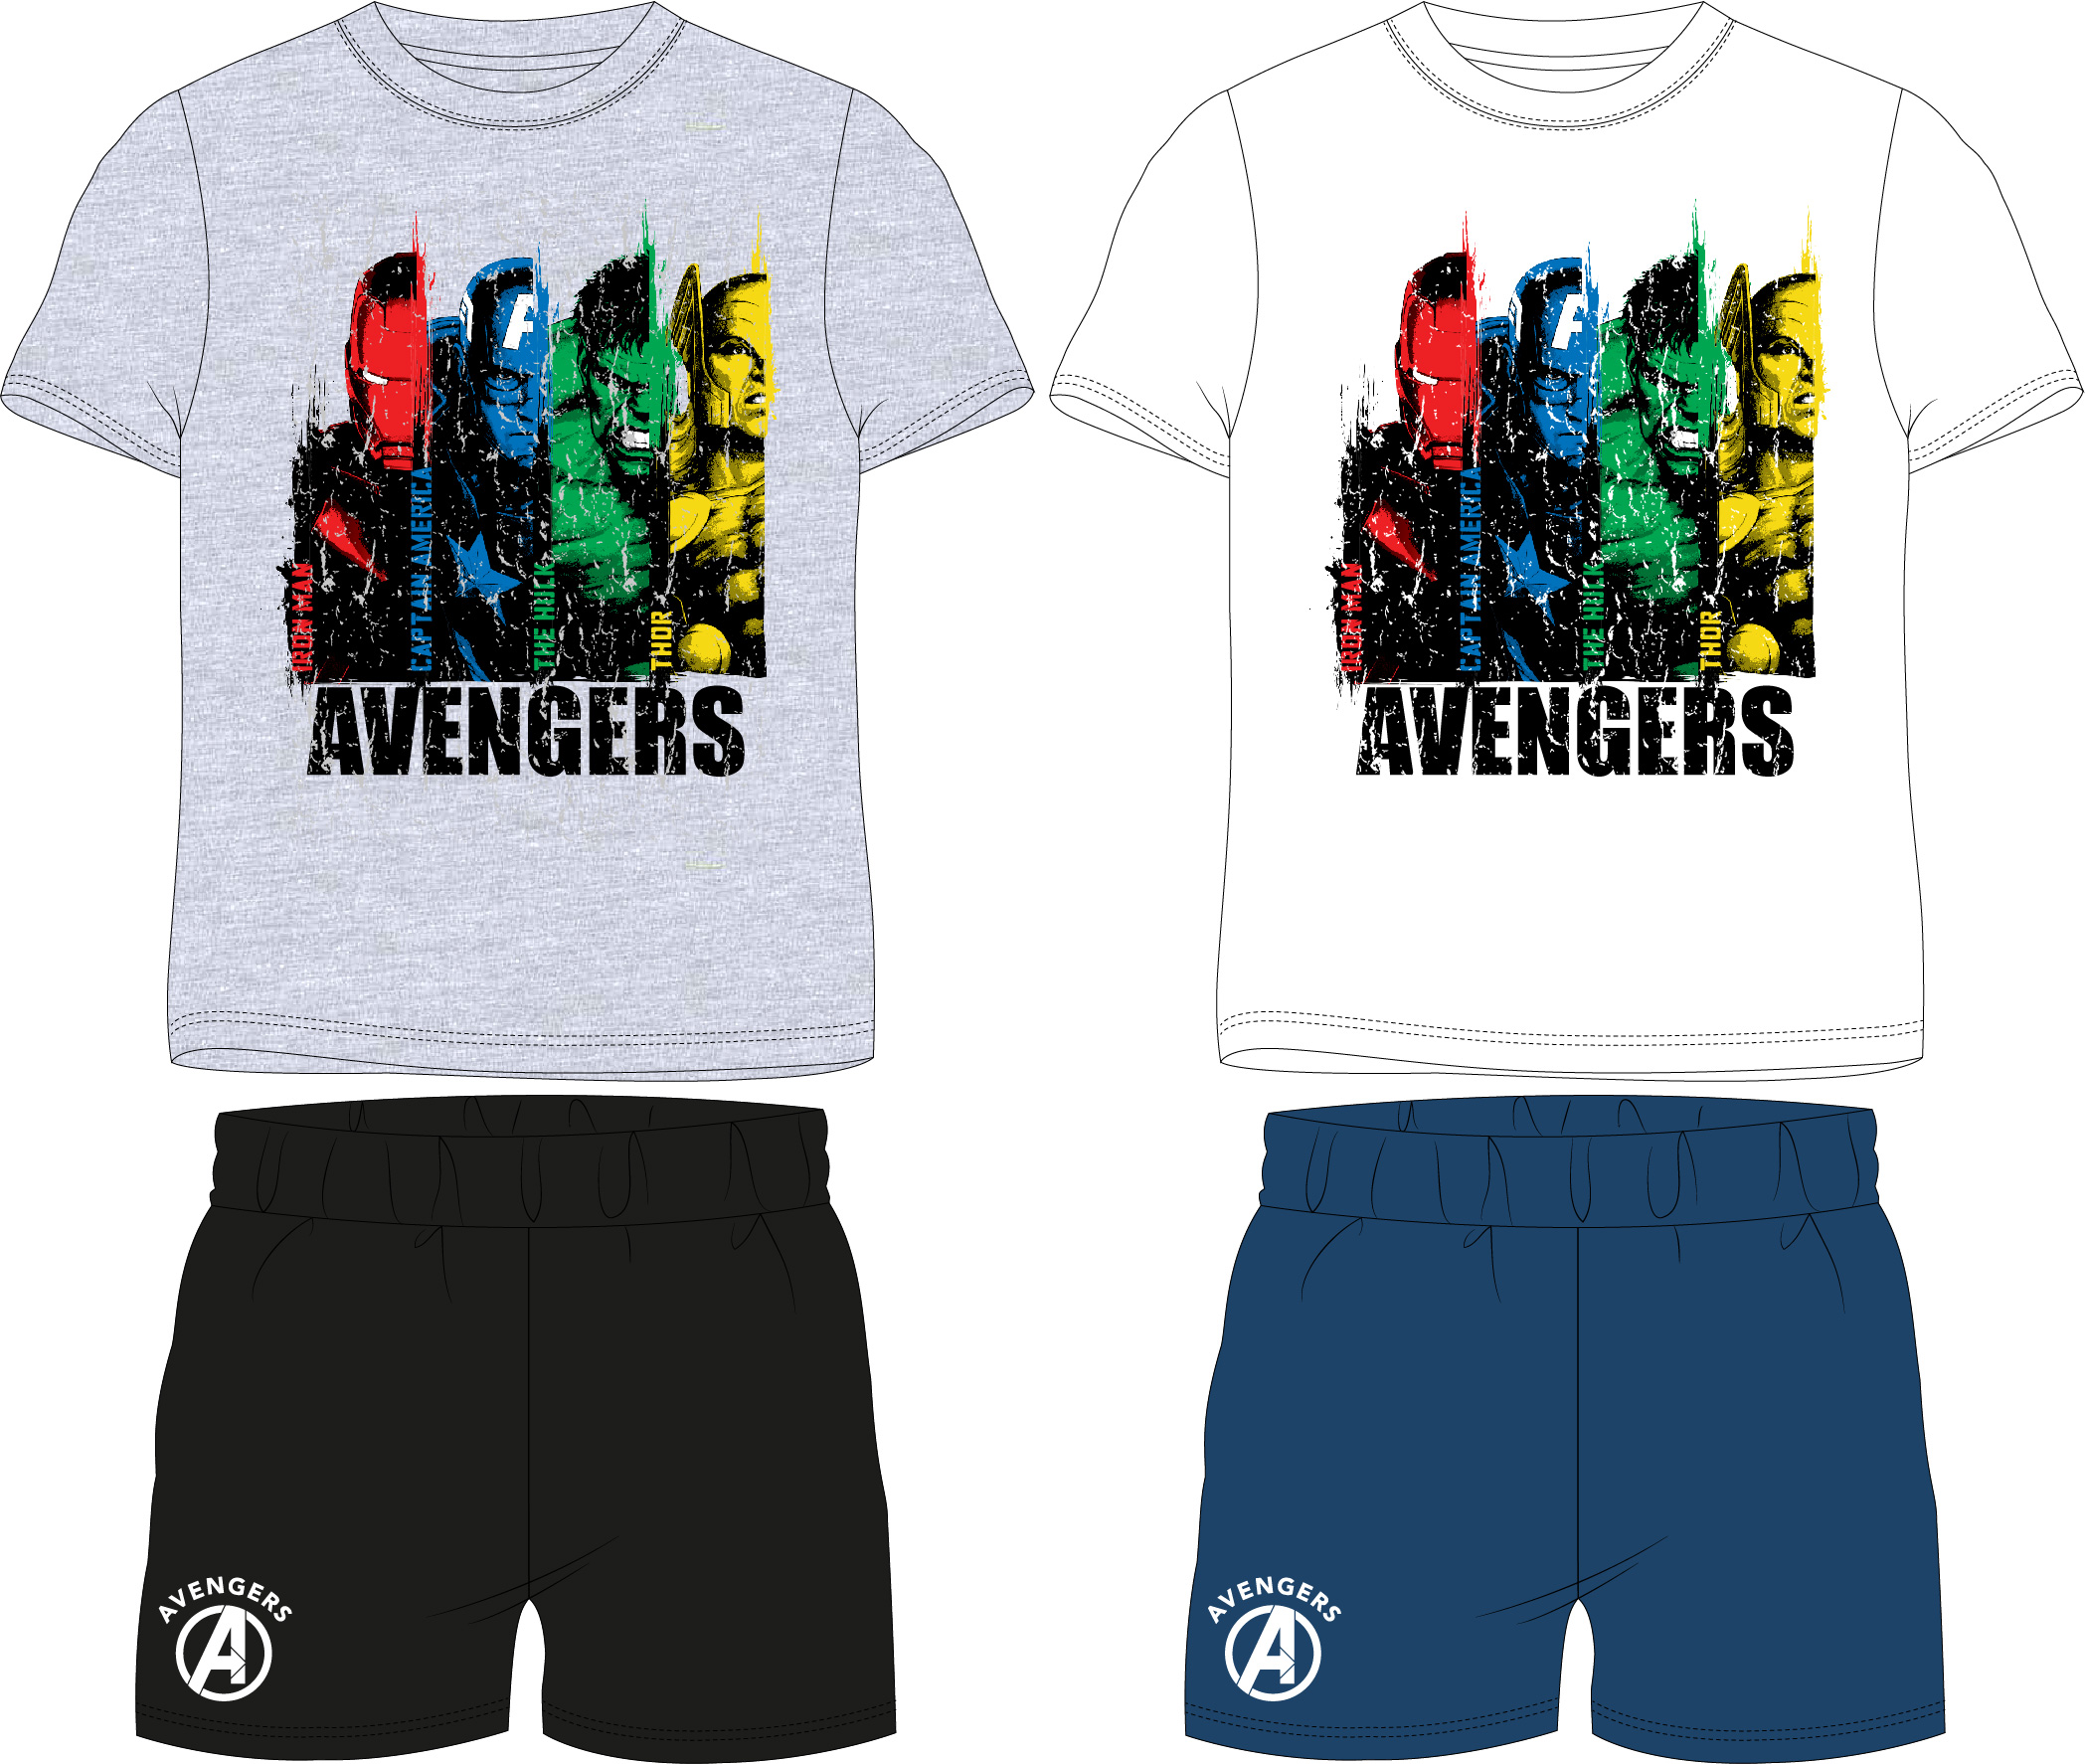 Avangers - licence Chlapecké pyžamo - Avengers 5204438, bílá / modrá Barva: Bílá, Velikost: 134-140